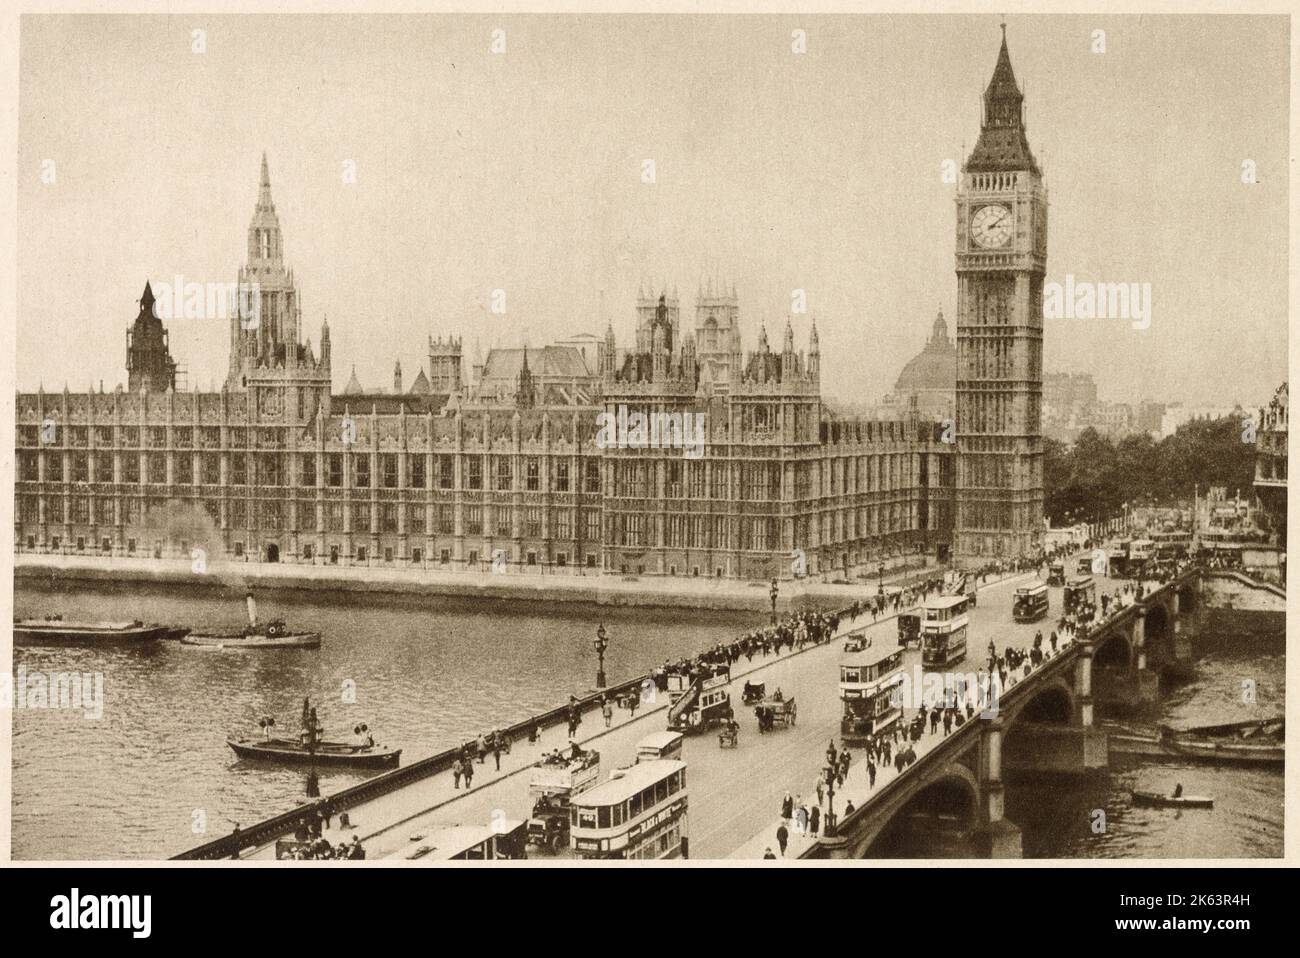 Photographie montrant le pont de Westminster occupé avec des piétons marchant à travers et un flux constant de circulation composé de tramways de transport public, d'omnibus et de quelques chevaux et charrettes. Banque D'Images